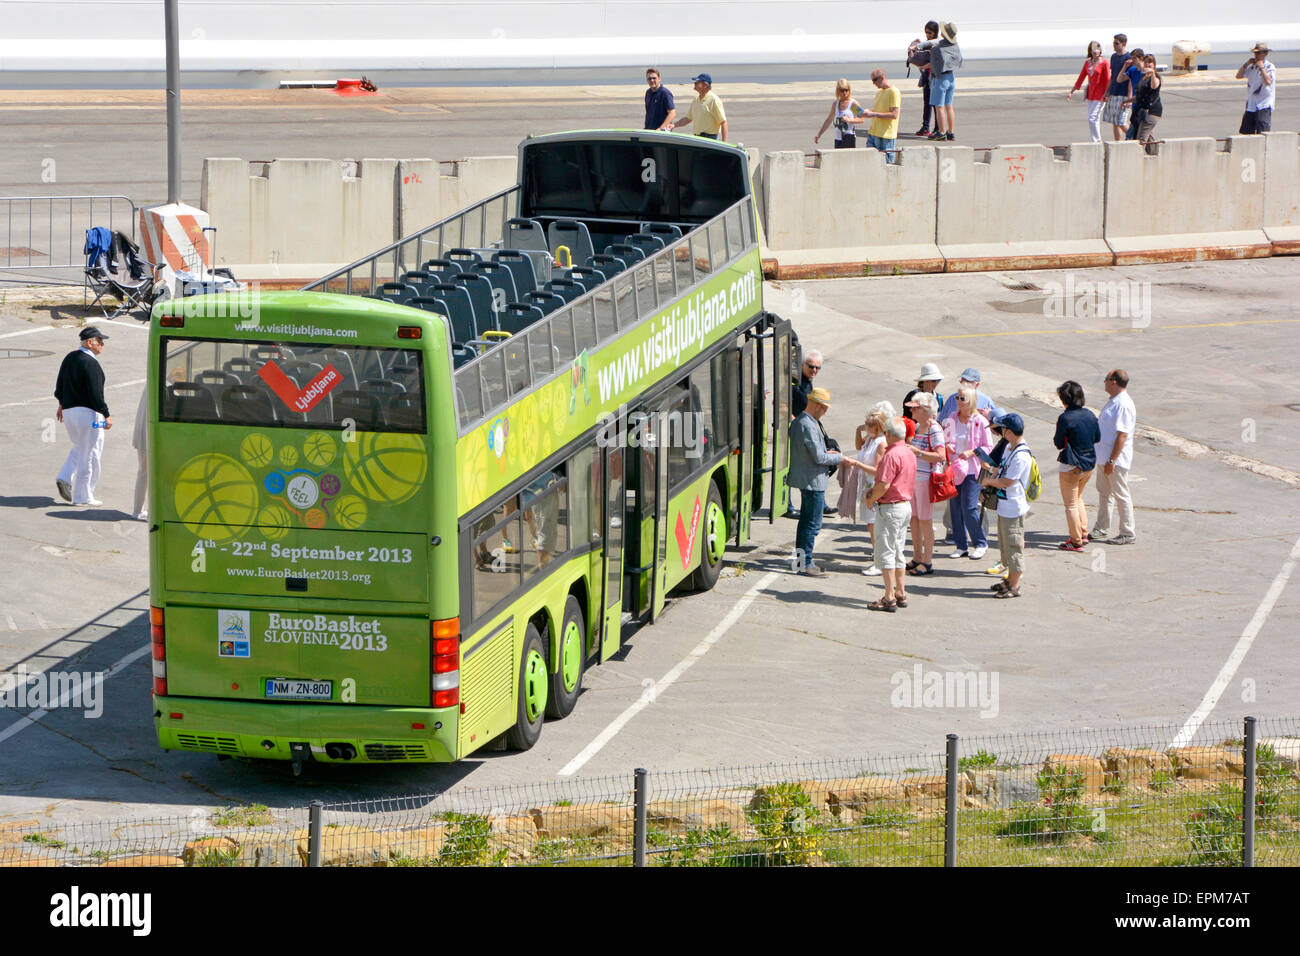 Double Decker open top tour bus stationné sur le quai de port de Koper en Slovénie la collecte des passagers d'un navire de croisière péninsule istrienne Banque D'Images